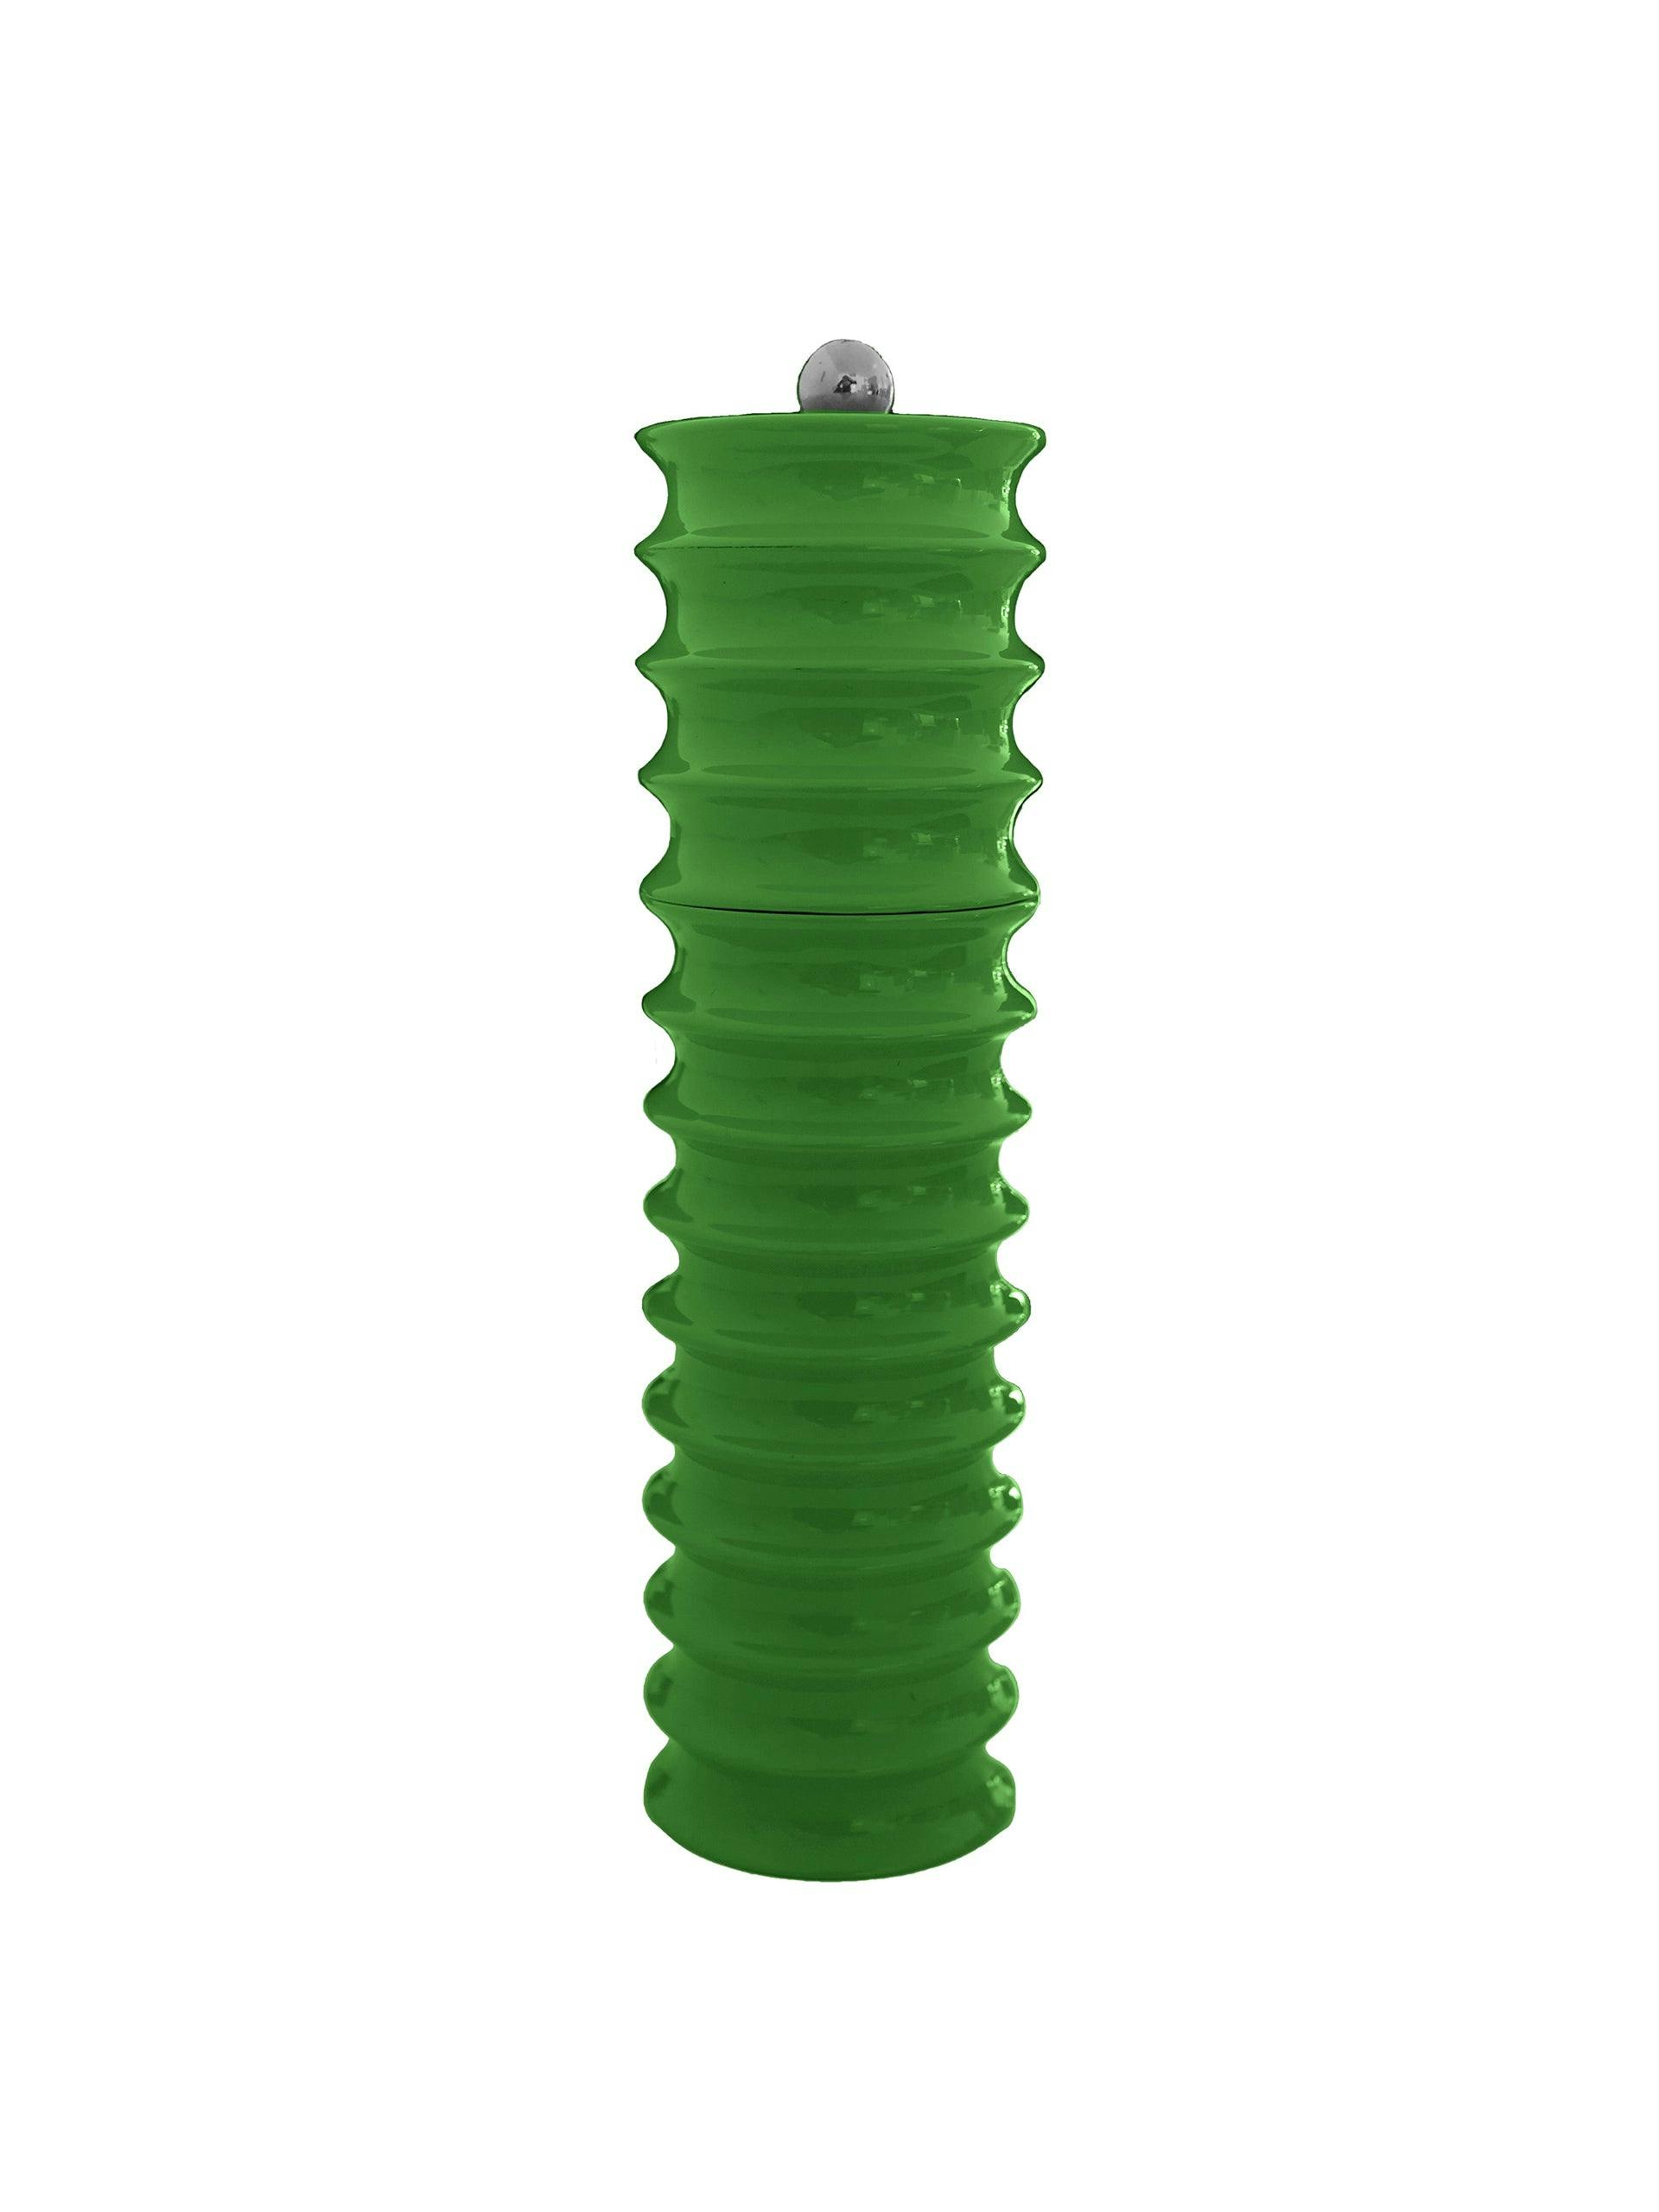 Twister salt/pepper grinder in Leaf Green